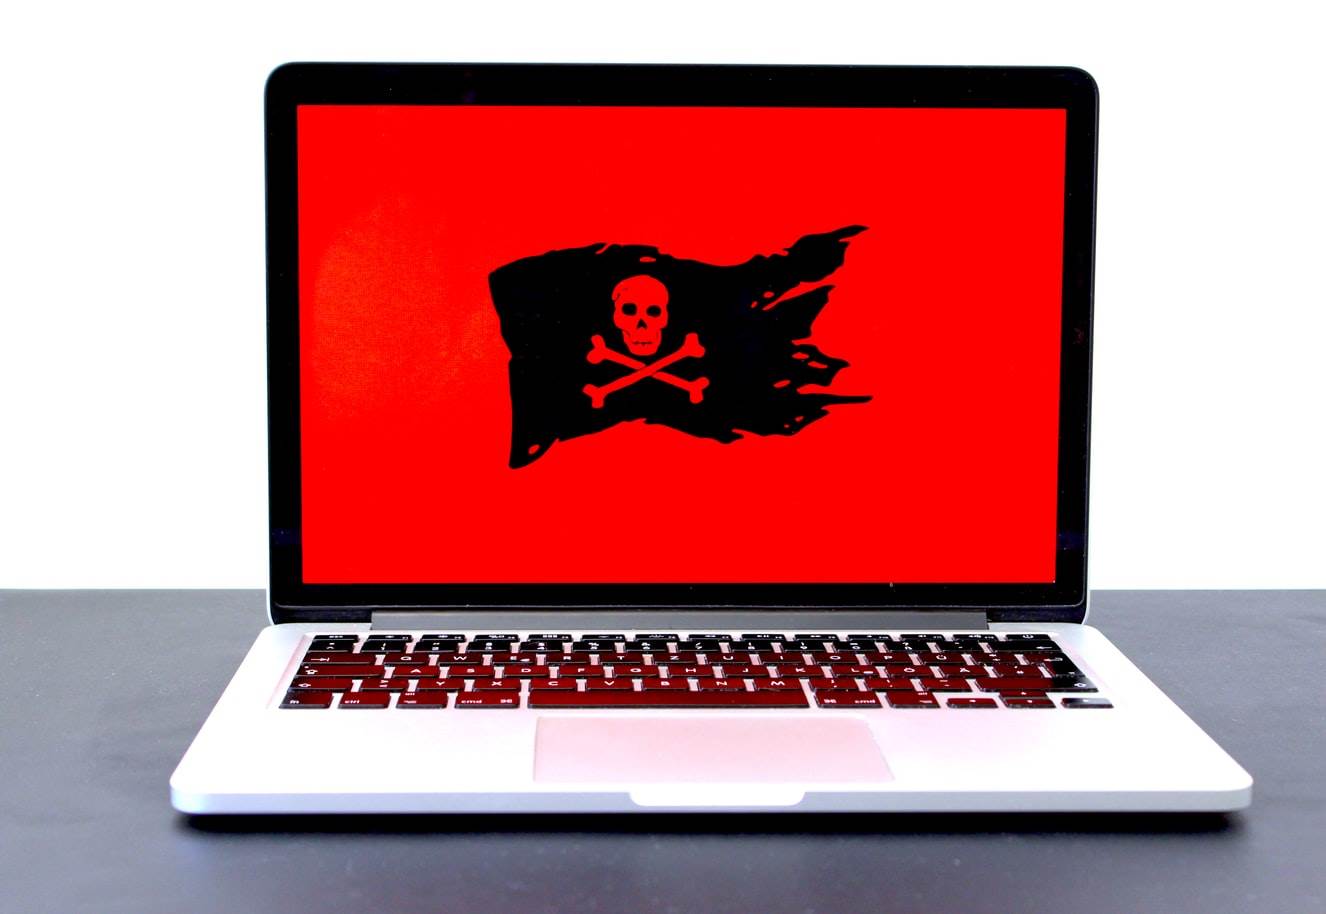  piraterija zabrana google 